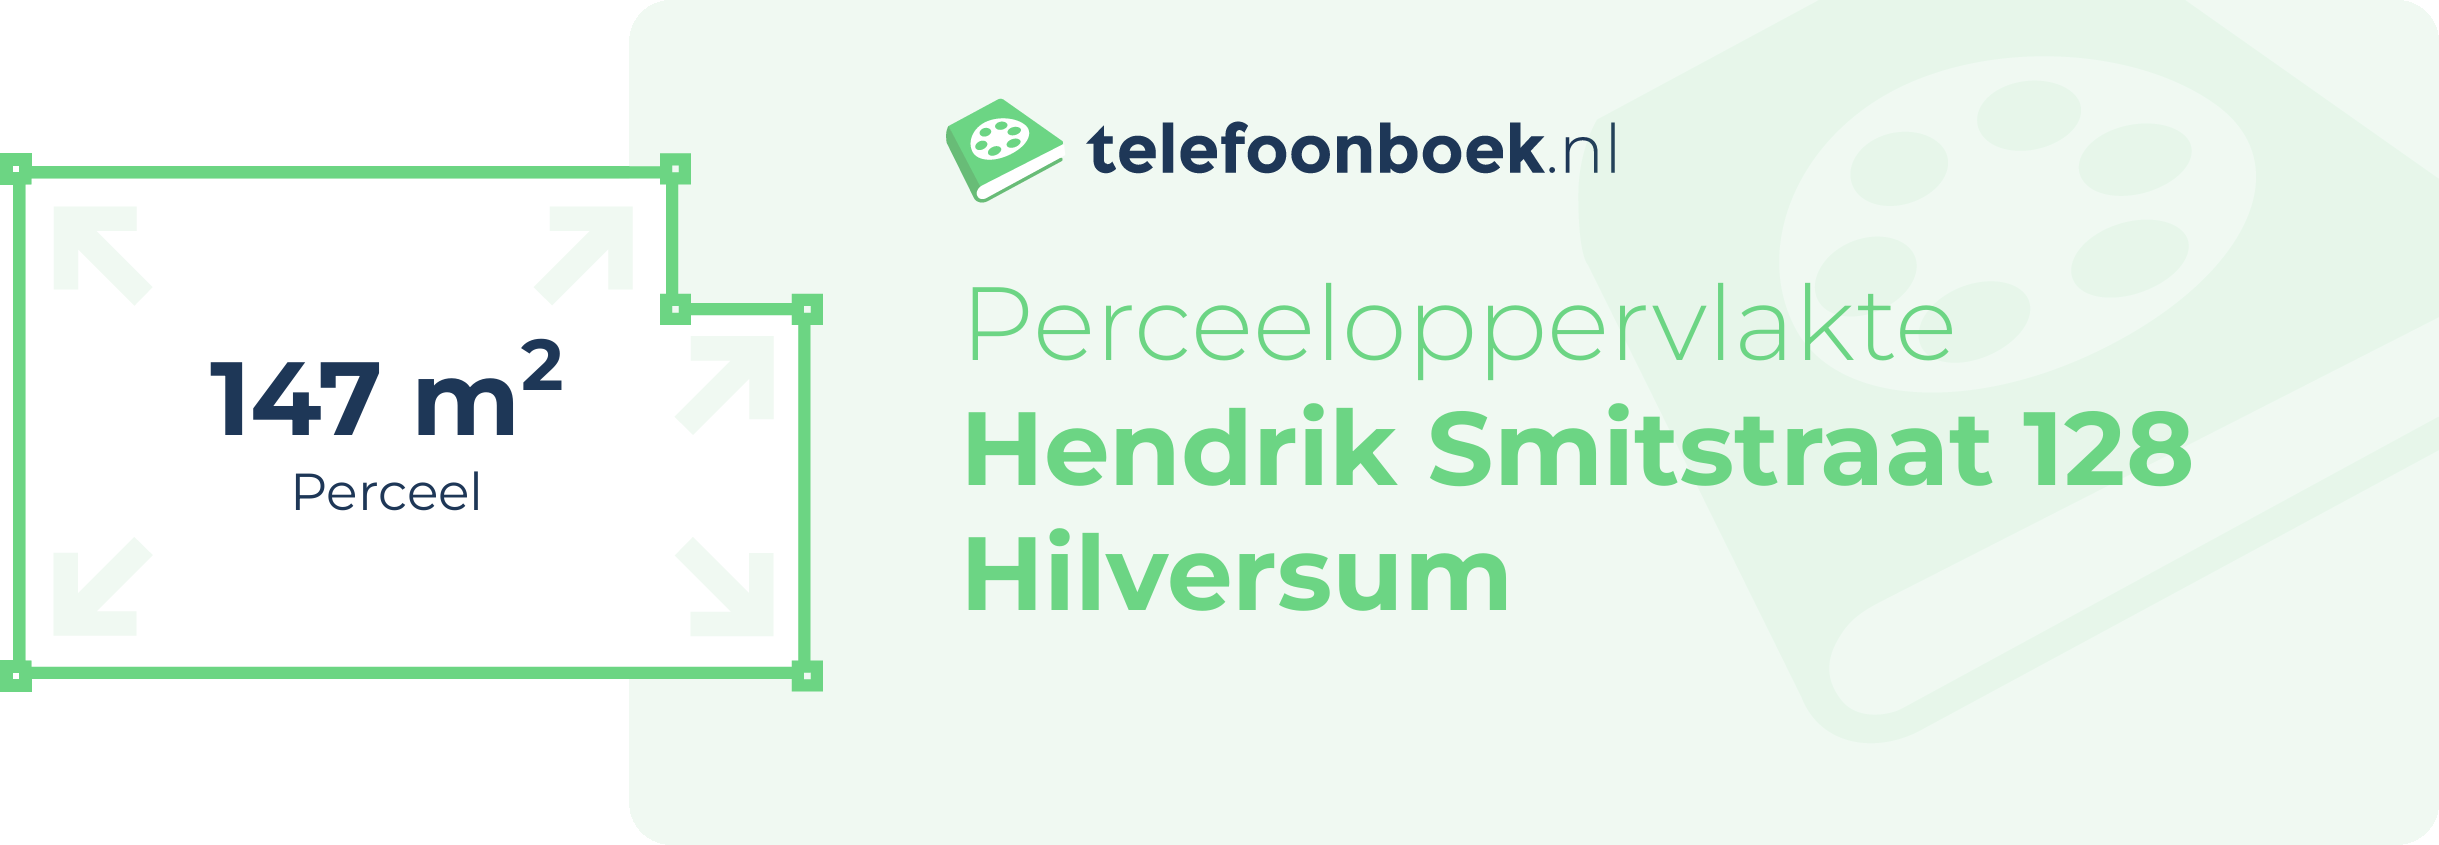 Perceeloppervlakte Hendrik Smitstraat 128 Hilversum